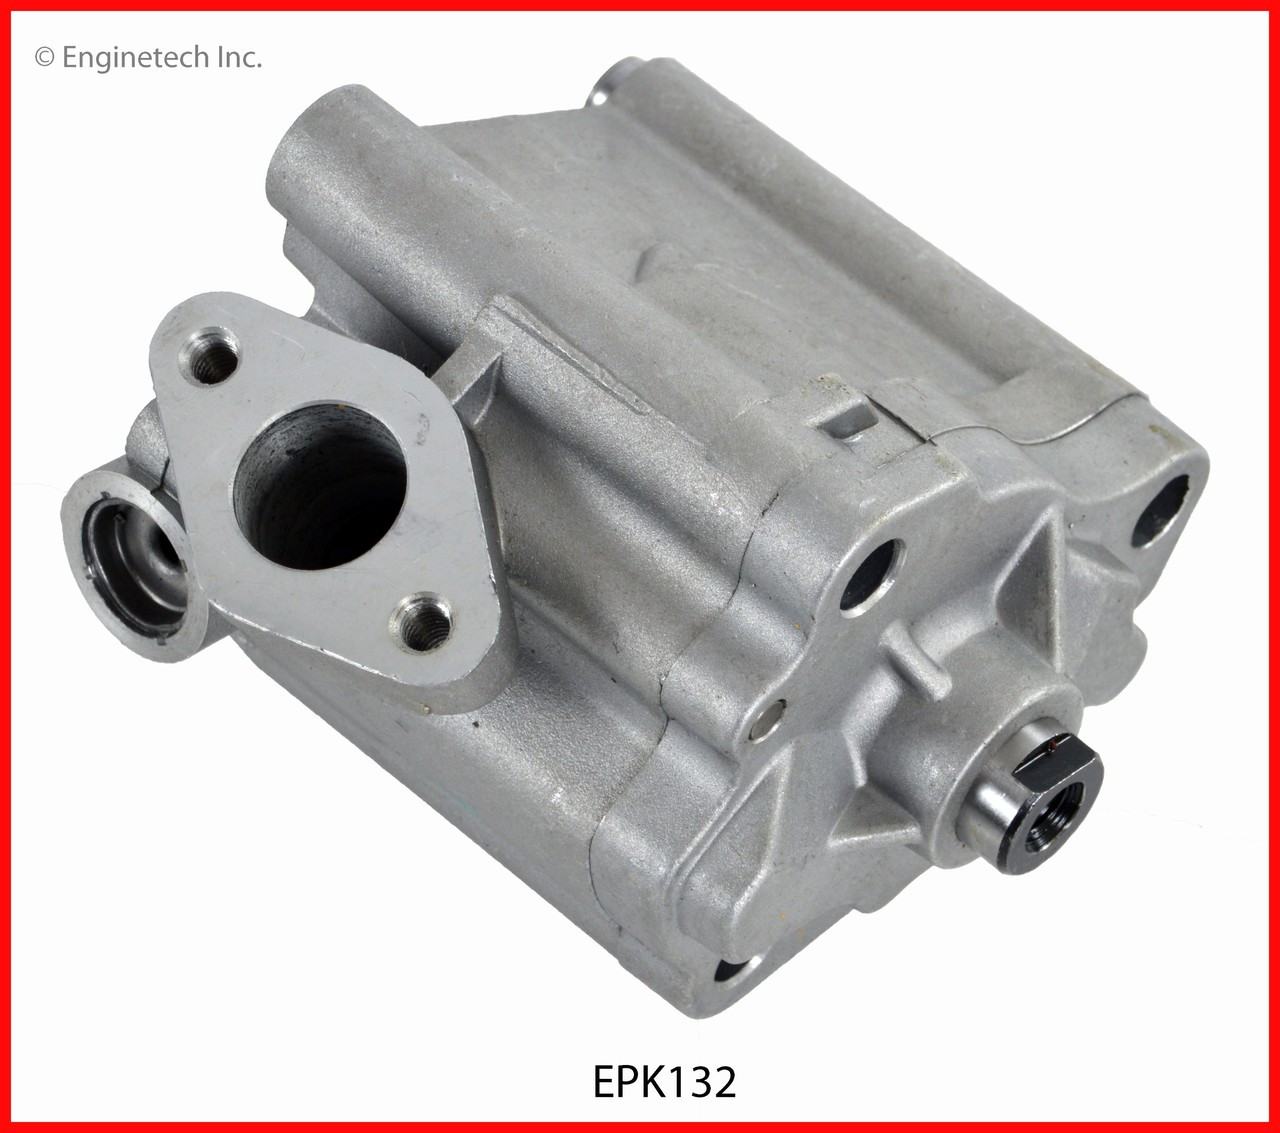 Oil Pump - 2011 Mazda 3 2.3L (EPK132.K101)